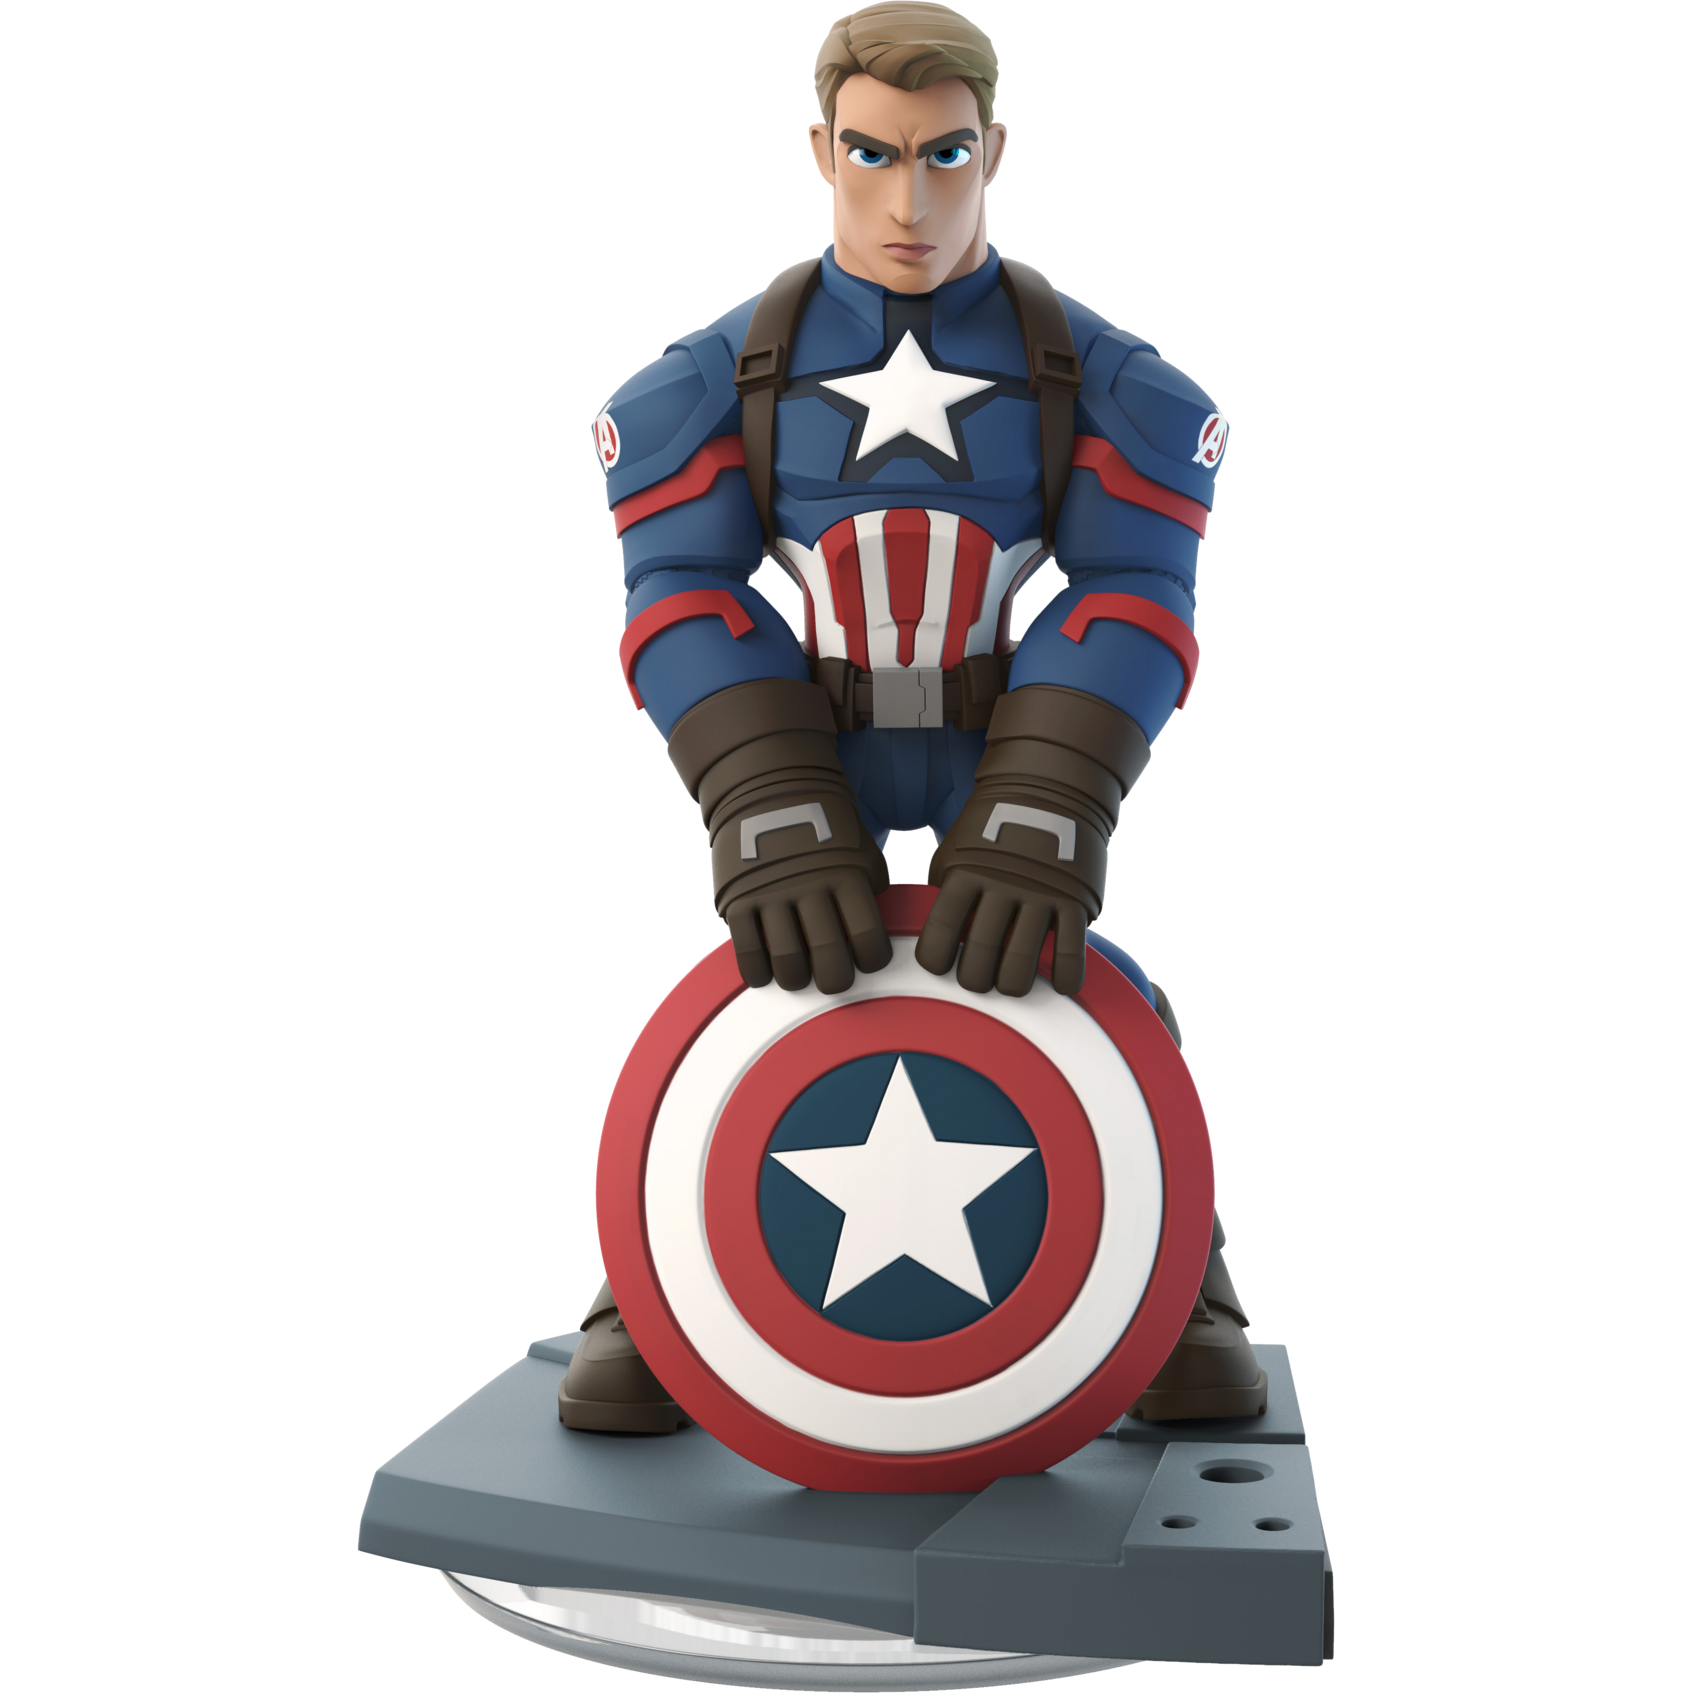 Disney Infinity 3.0 - Figurine Captain America Premier Avenger